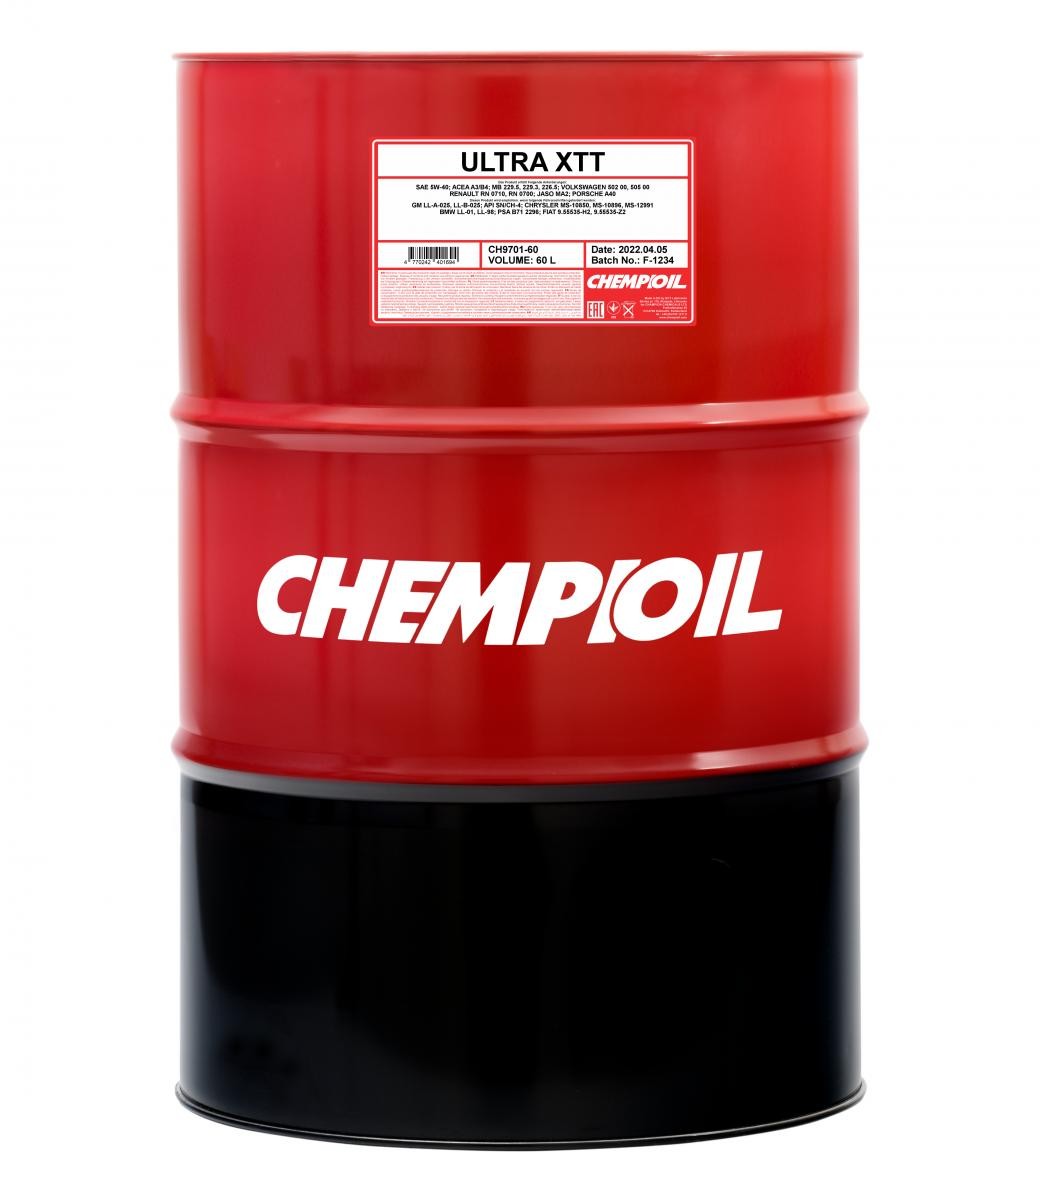 CHEMPIOIL Ultra, XTT CH9701-60 Engine oil 5W-40, 60l